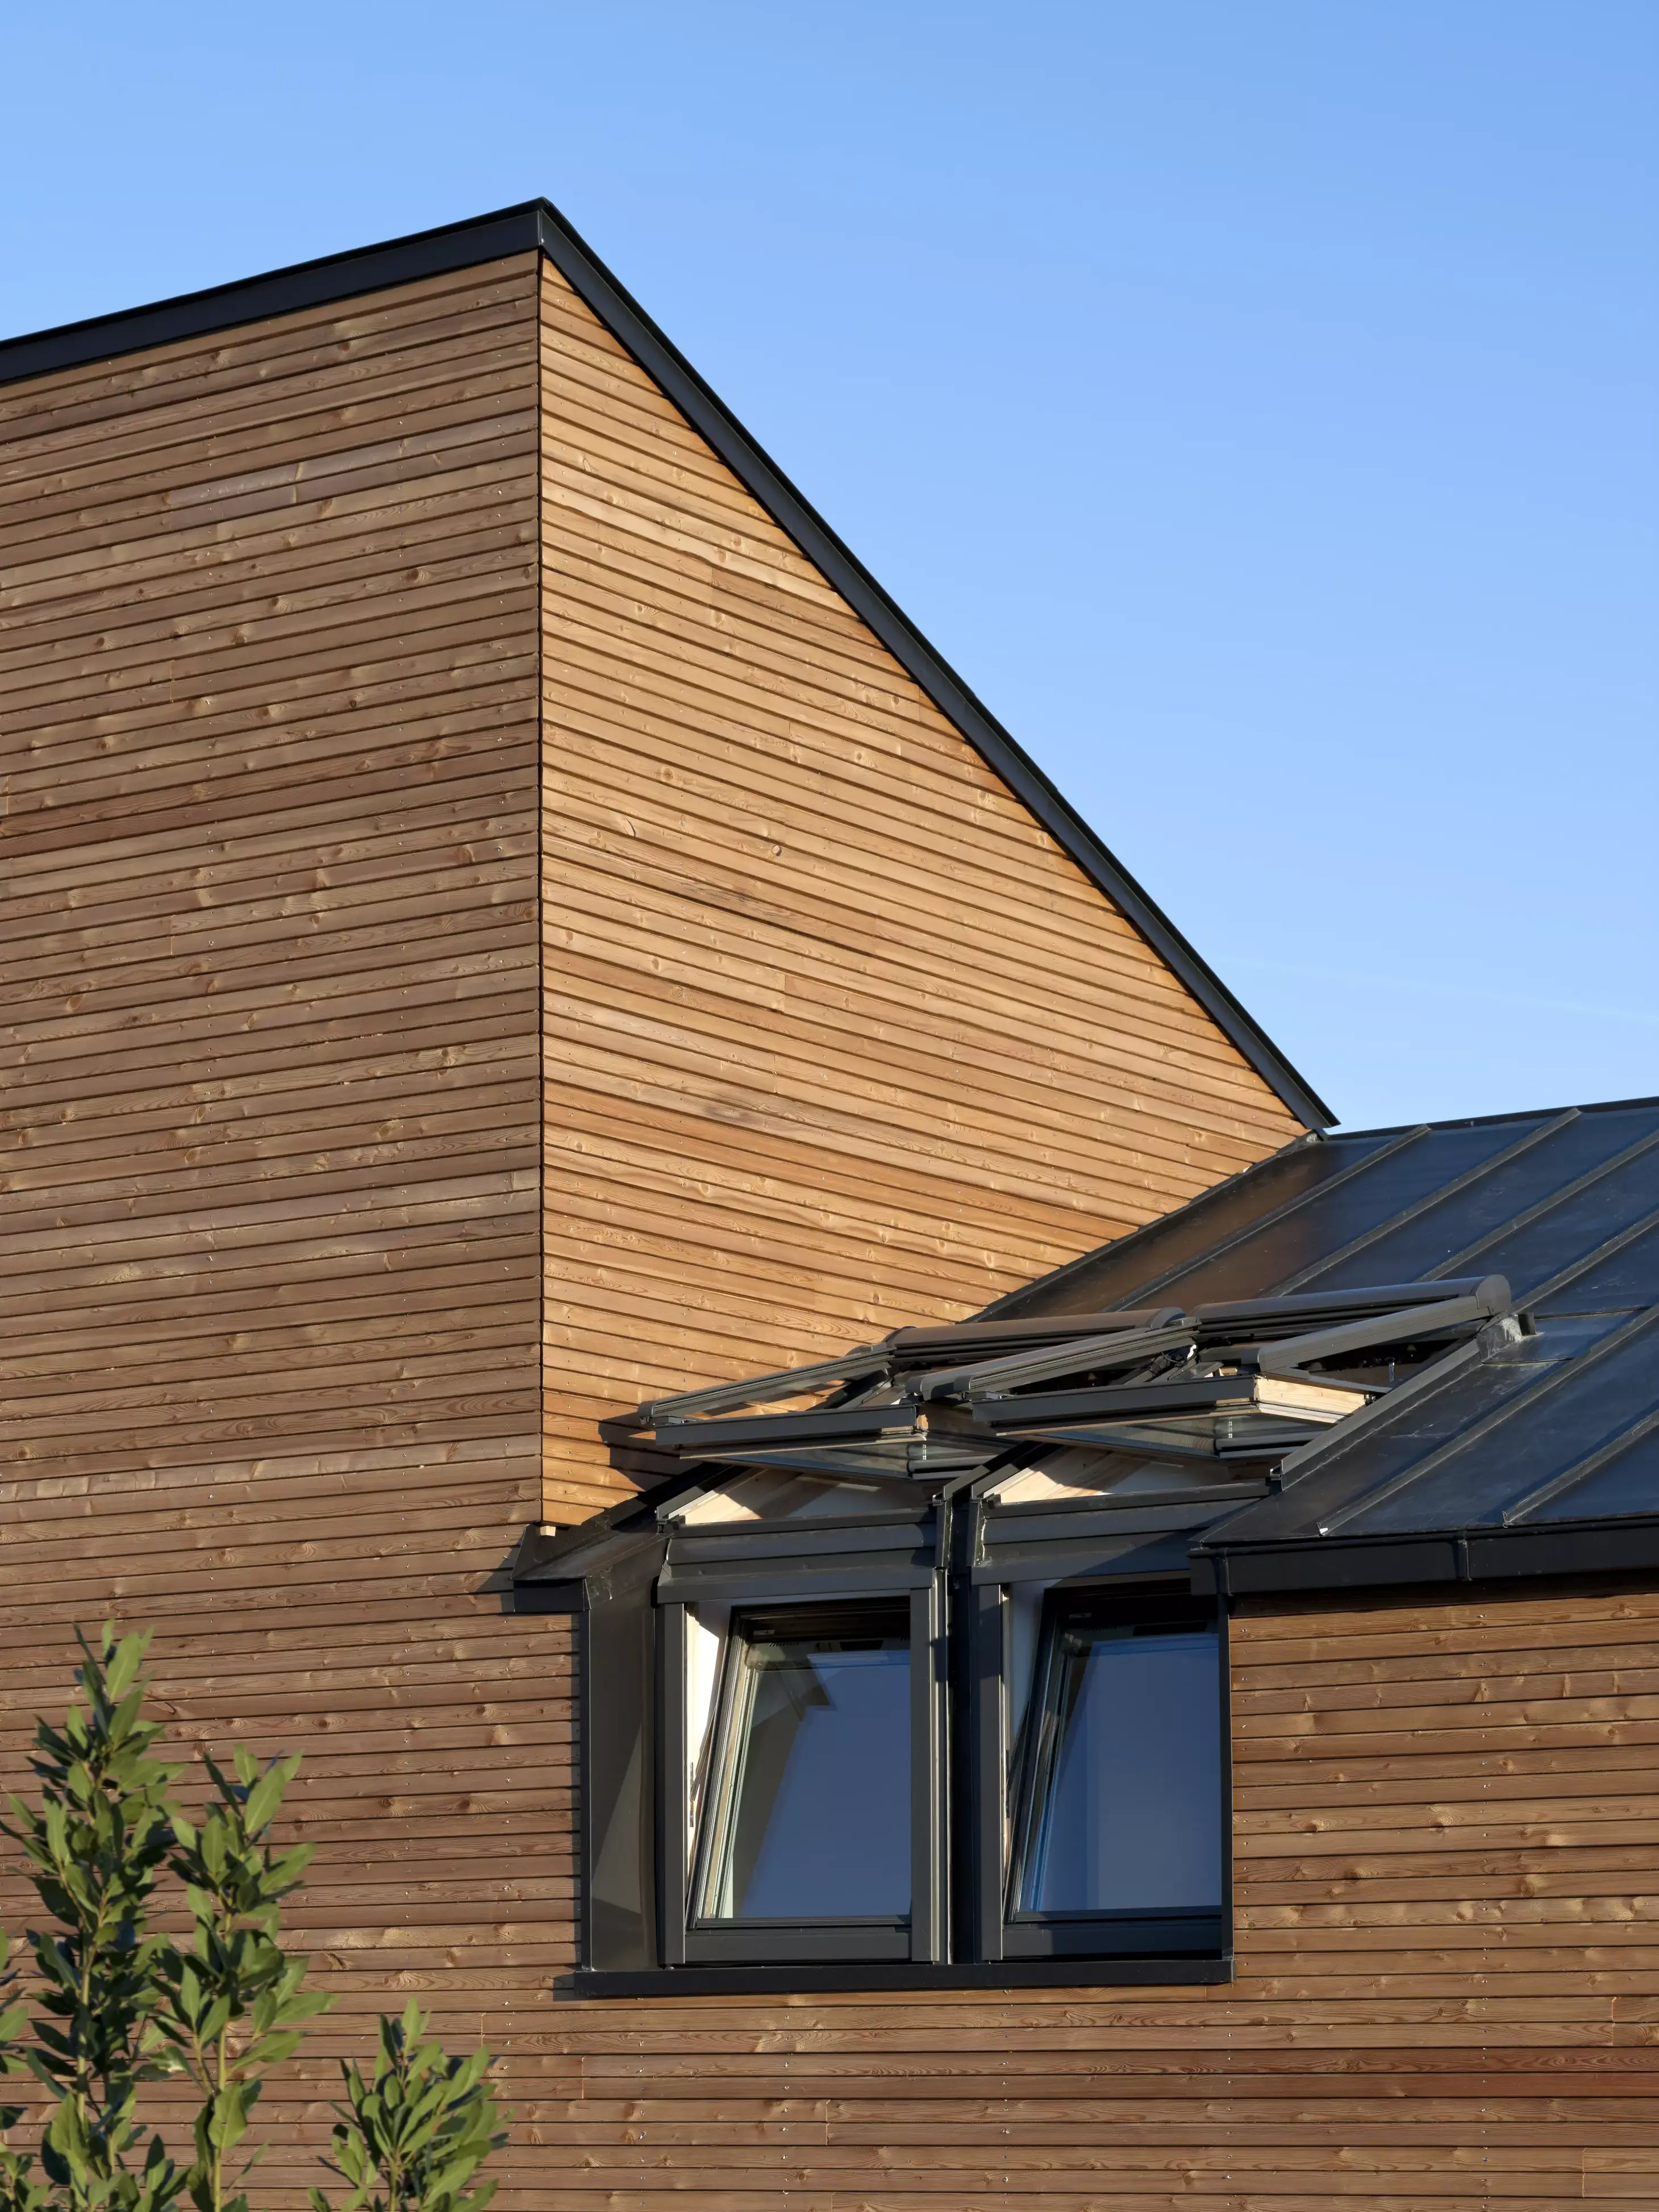 Une maison moderne avec une fenêtre de toit Velux, illustrant une combinaison harmonieuse de fonctionnalité et de design esthétique.